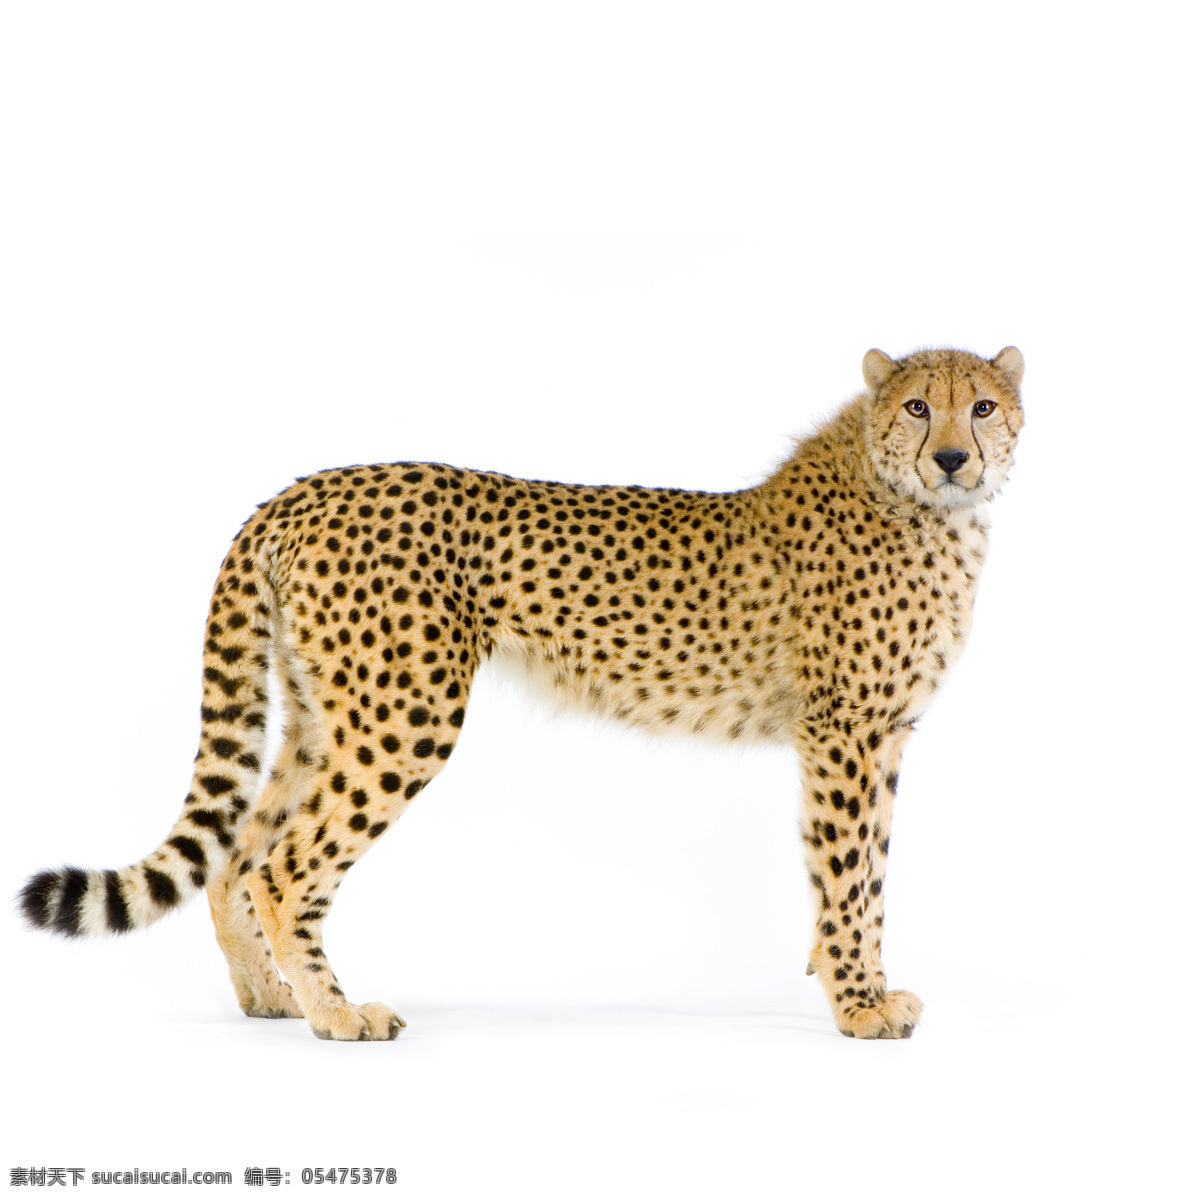 豹子图片素材 豹子 猎豹 猫科动物 动物世界 陆地动物 生物世界